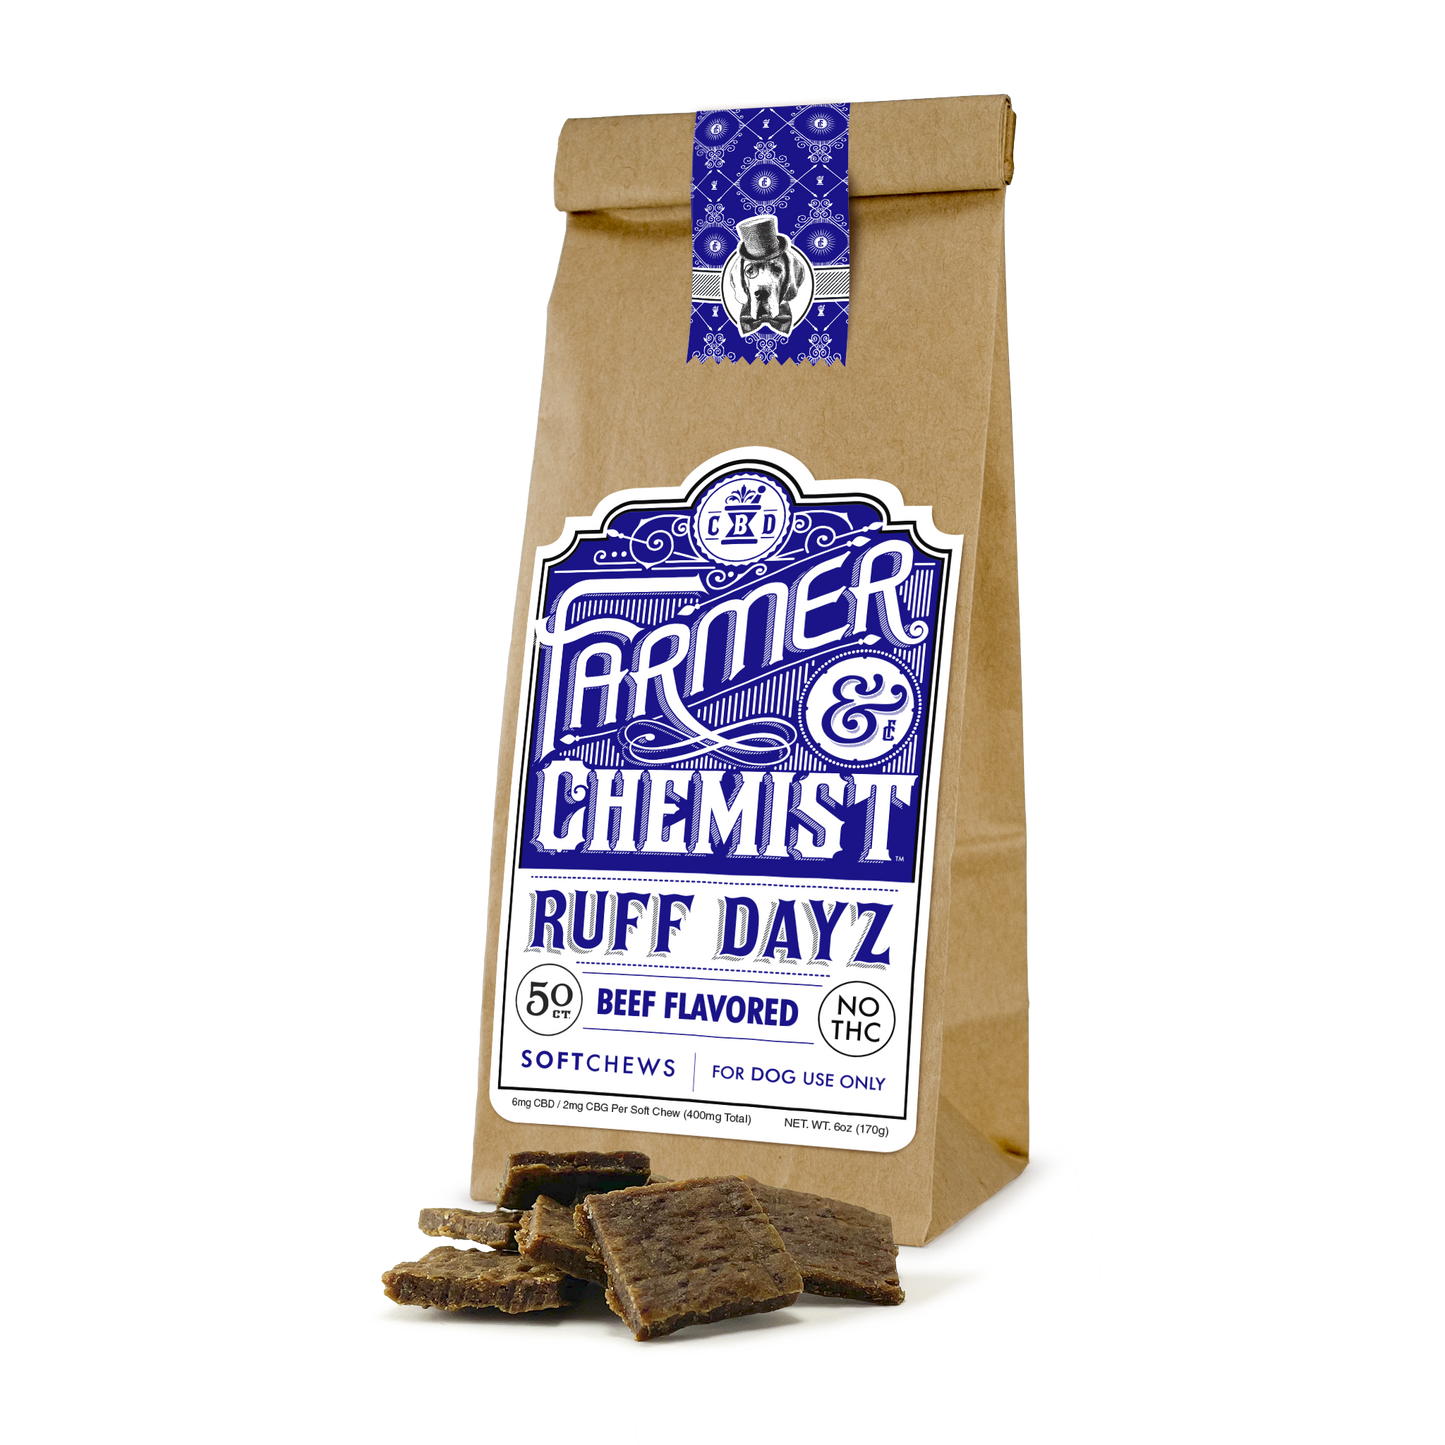 RUFF DAYZ - Masticables blandos para perros con sabor a ternera de 50 ct